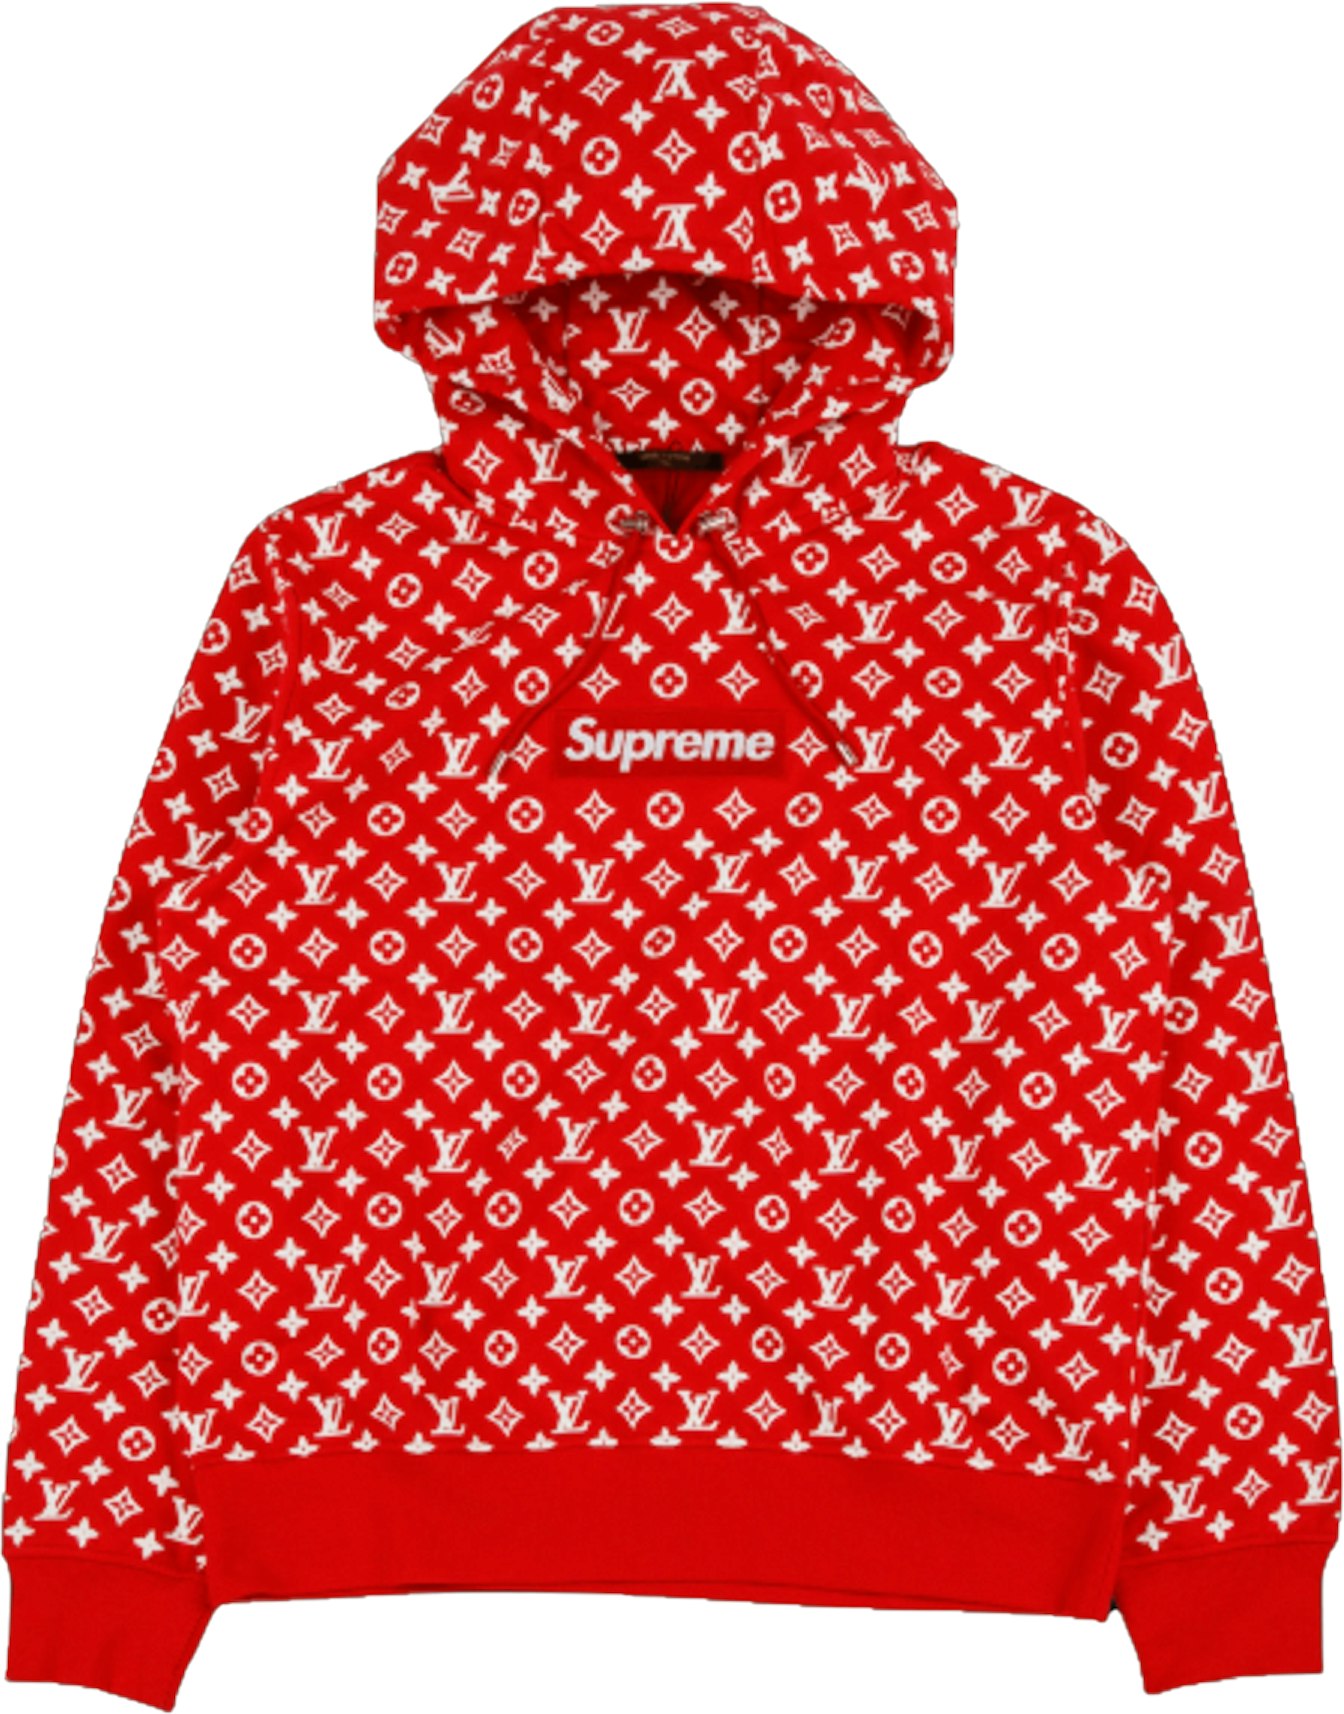 Supreme x Louis Vuitton Box Logo Hooded Red - Men's -